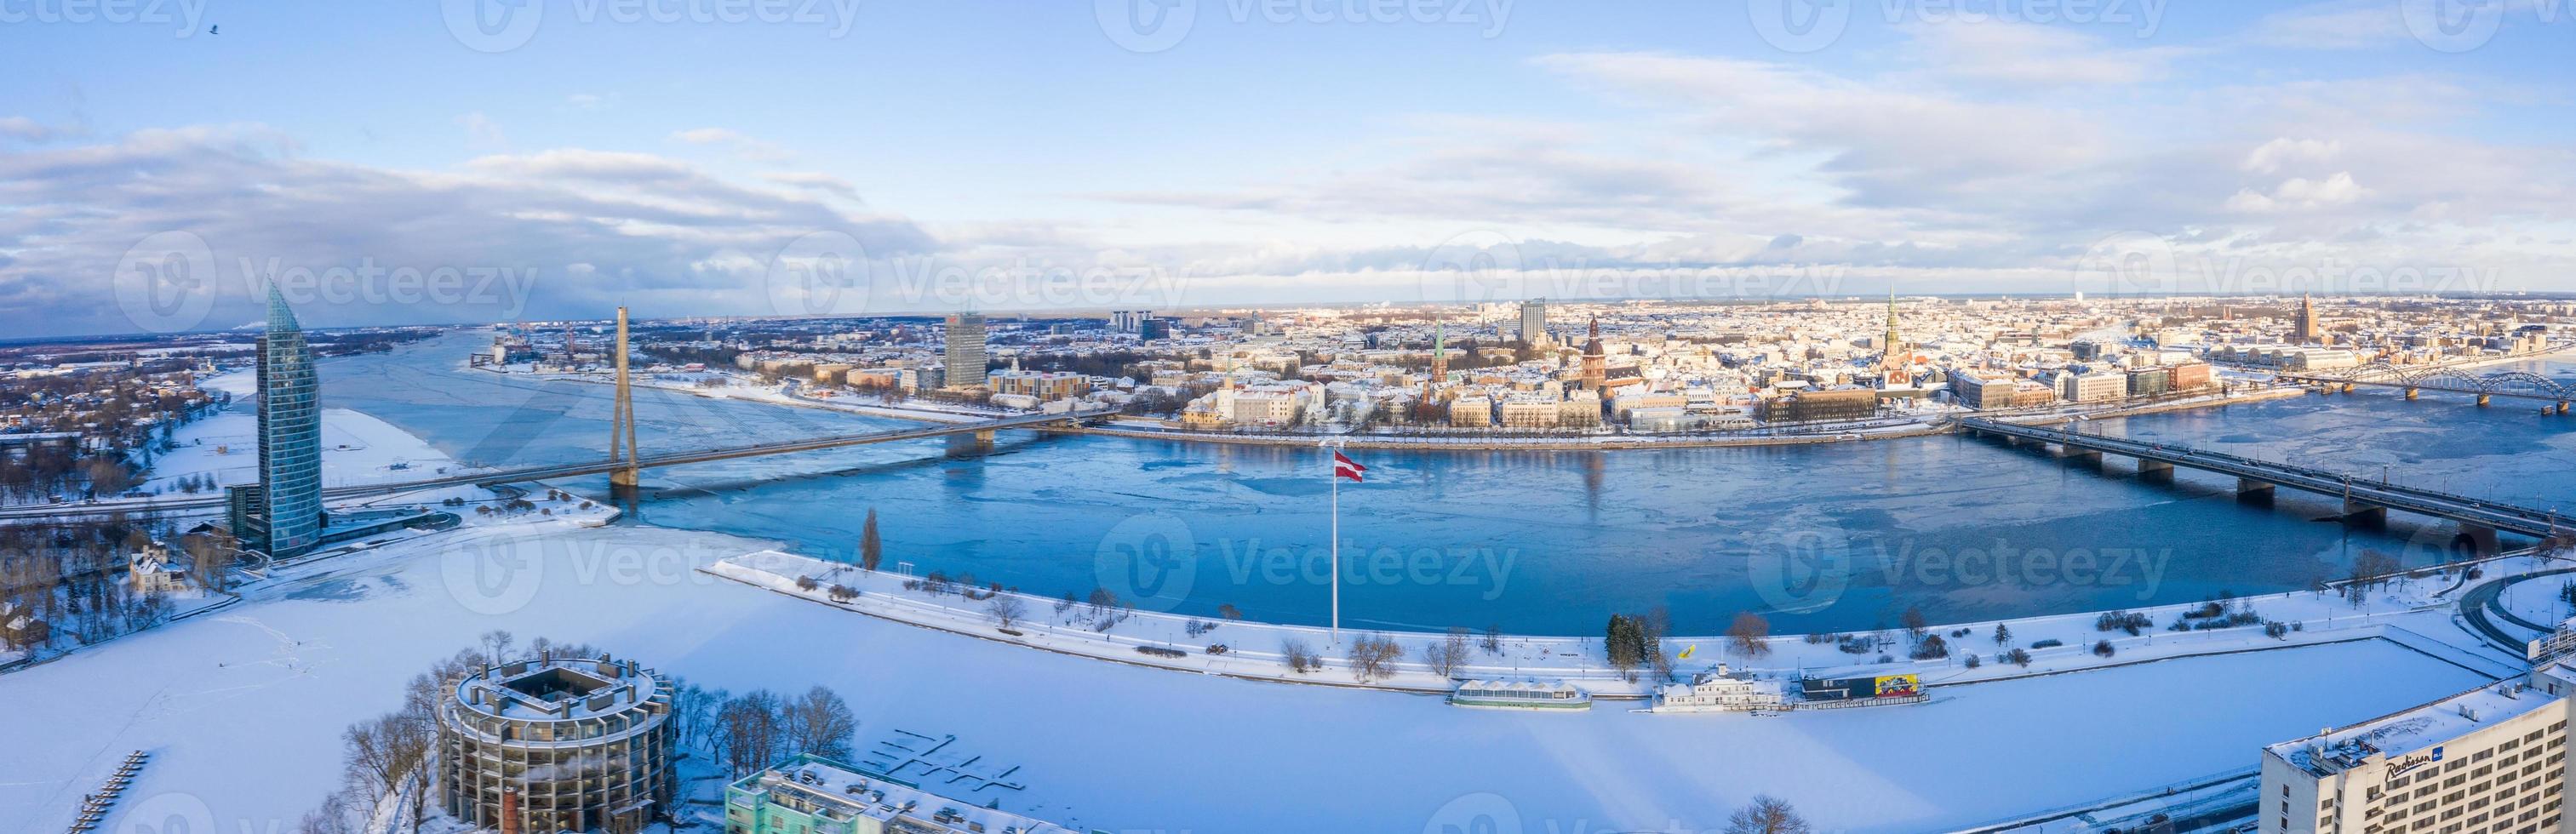 belle vue panoramique sur la ville de riga, lettonie. vieille ville au bord de la rivière Daugava. photo